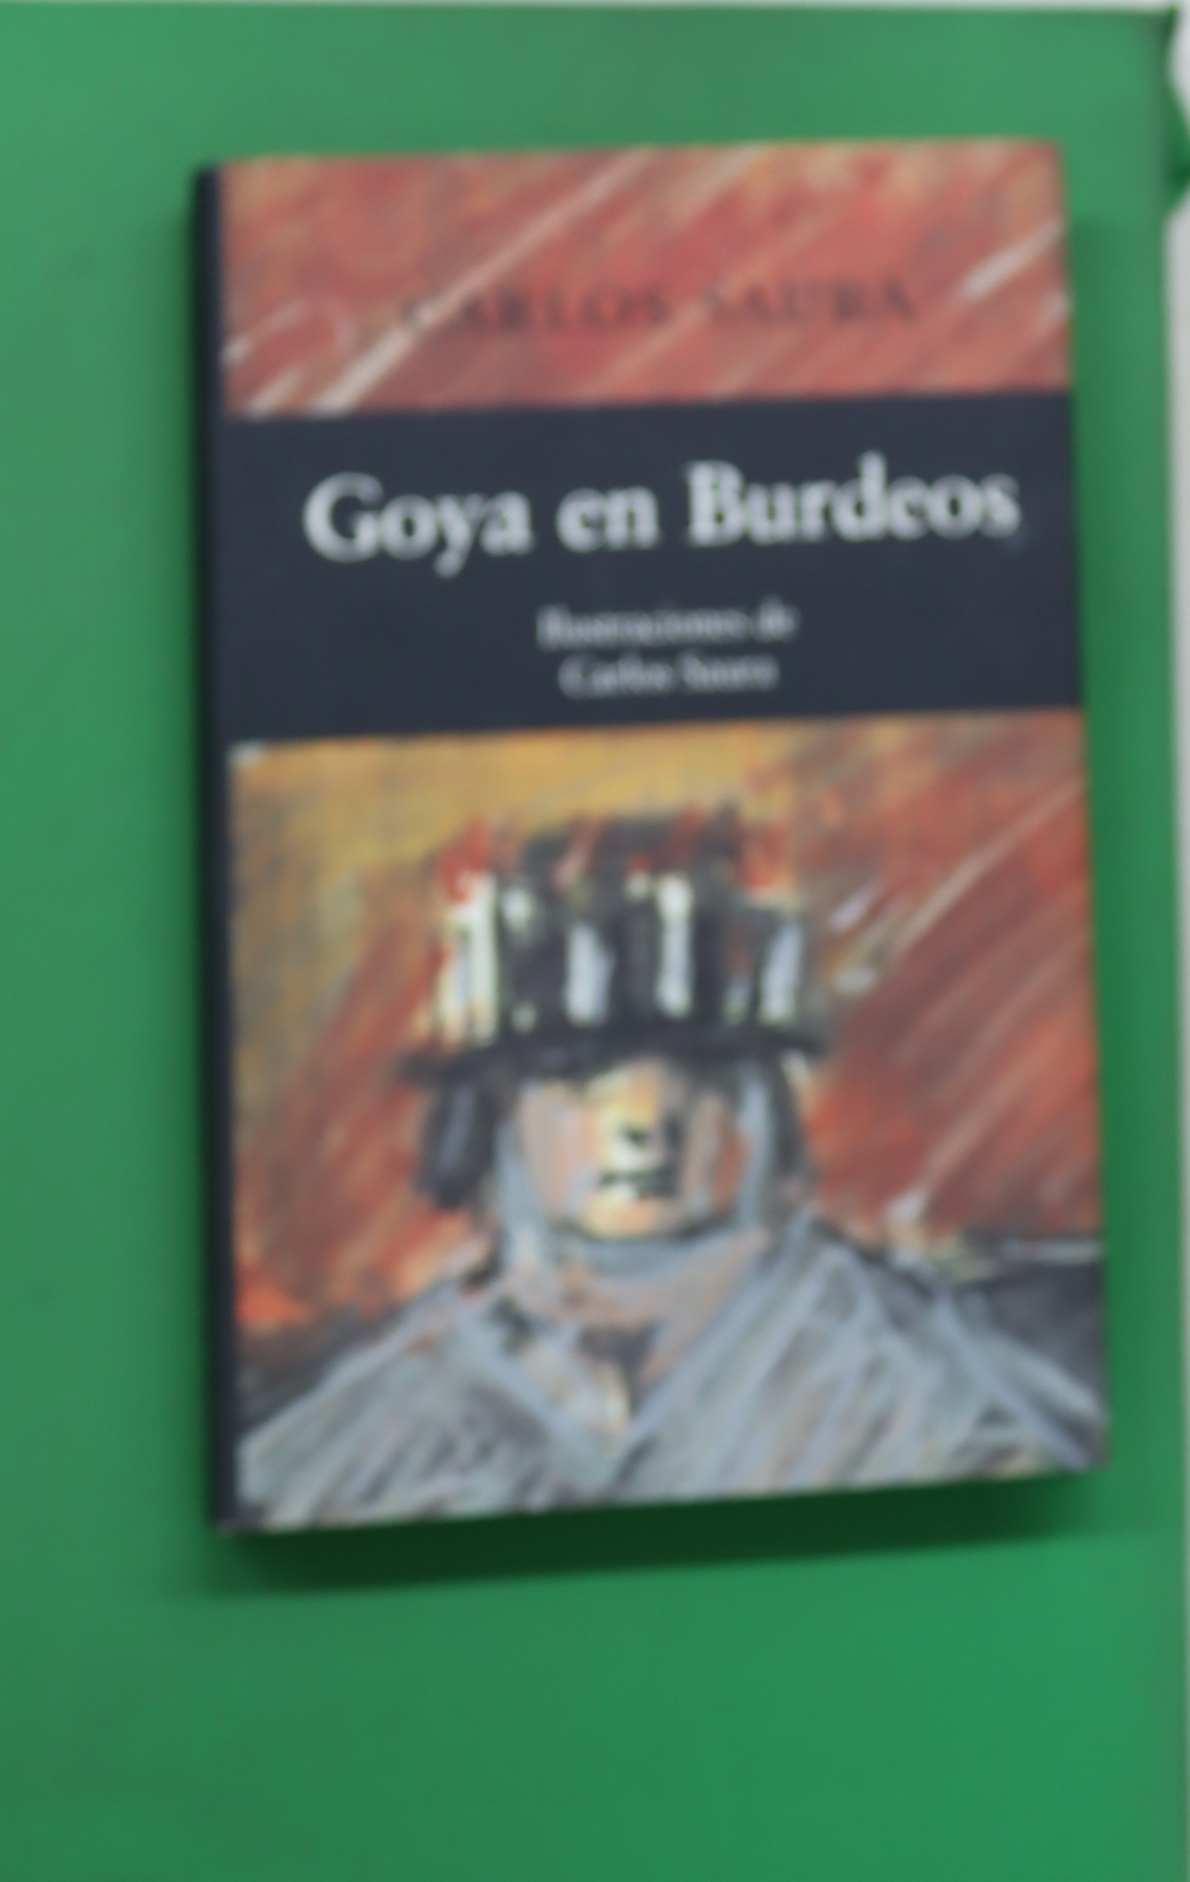 Goya en Burdeos : guión original de la película dirigida por Carlos Saura - Saura, Carlos